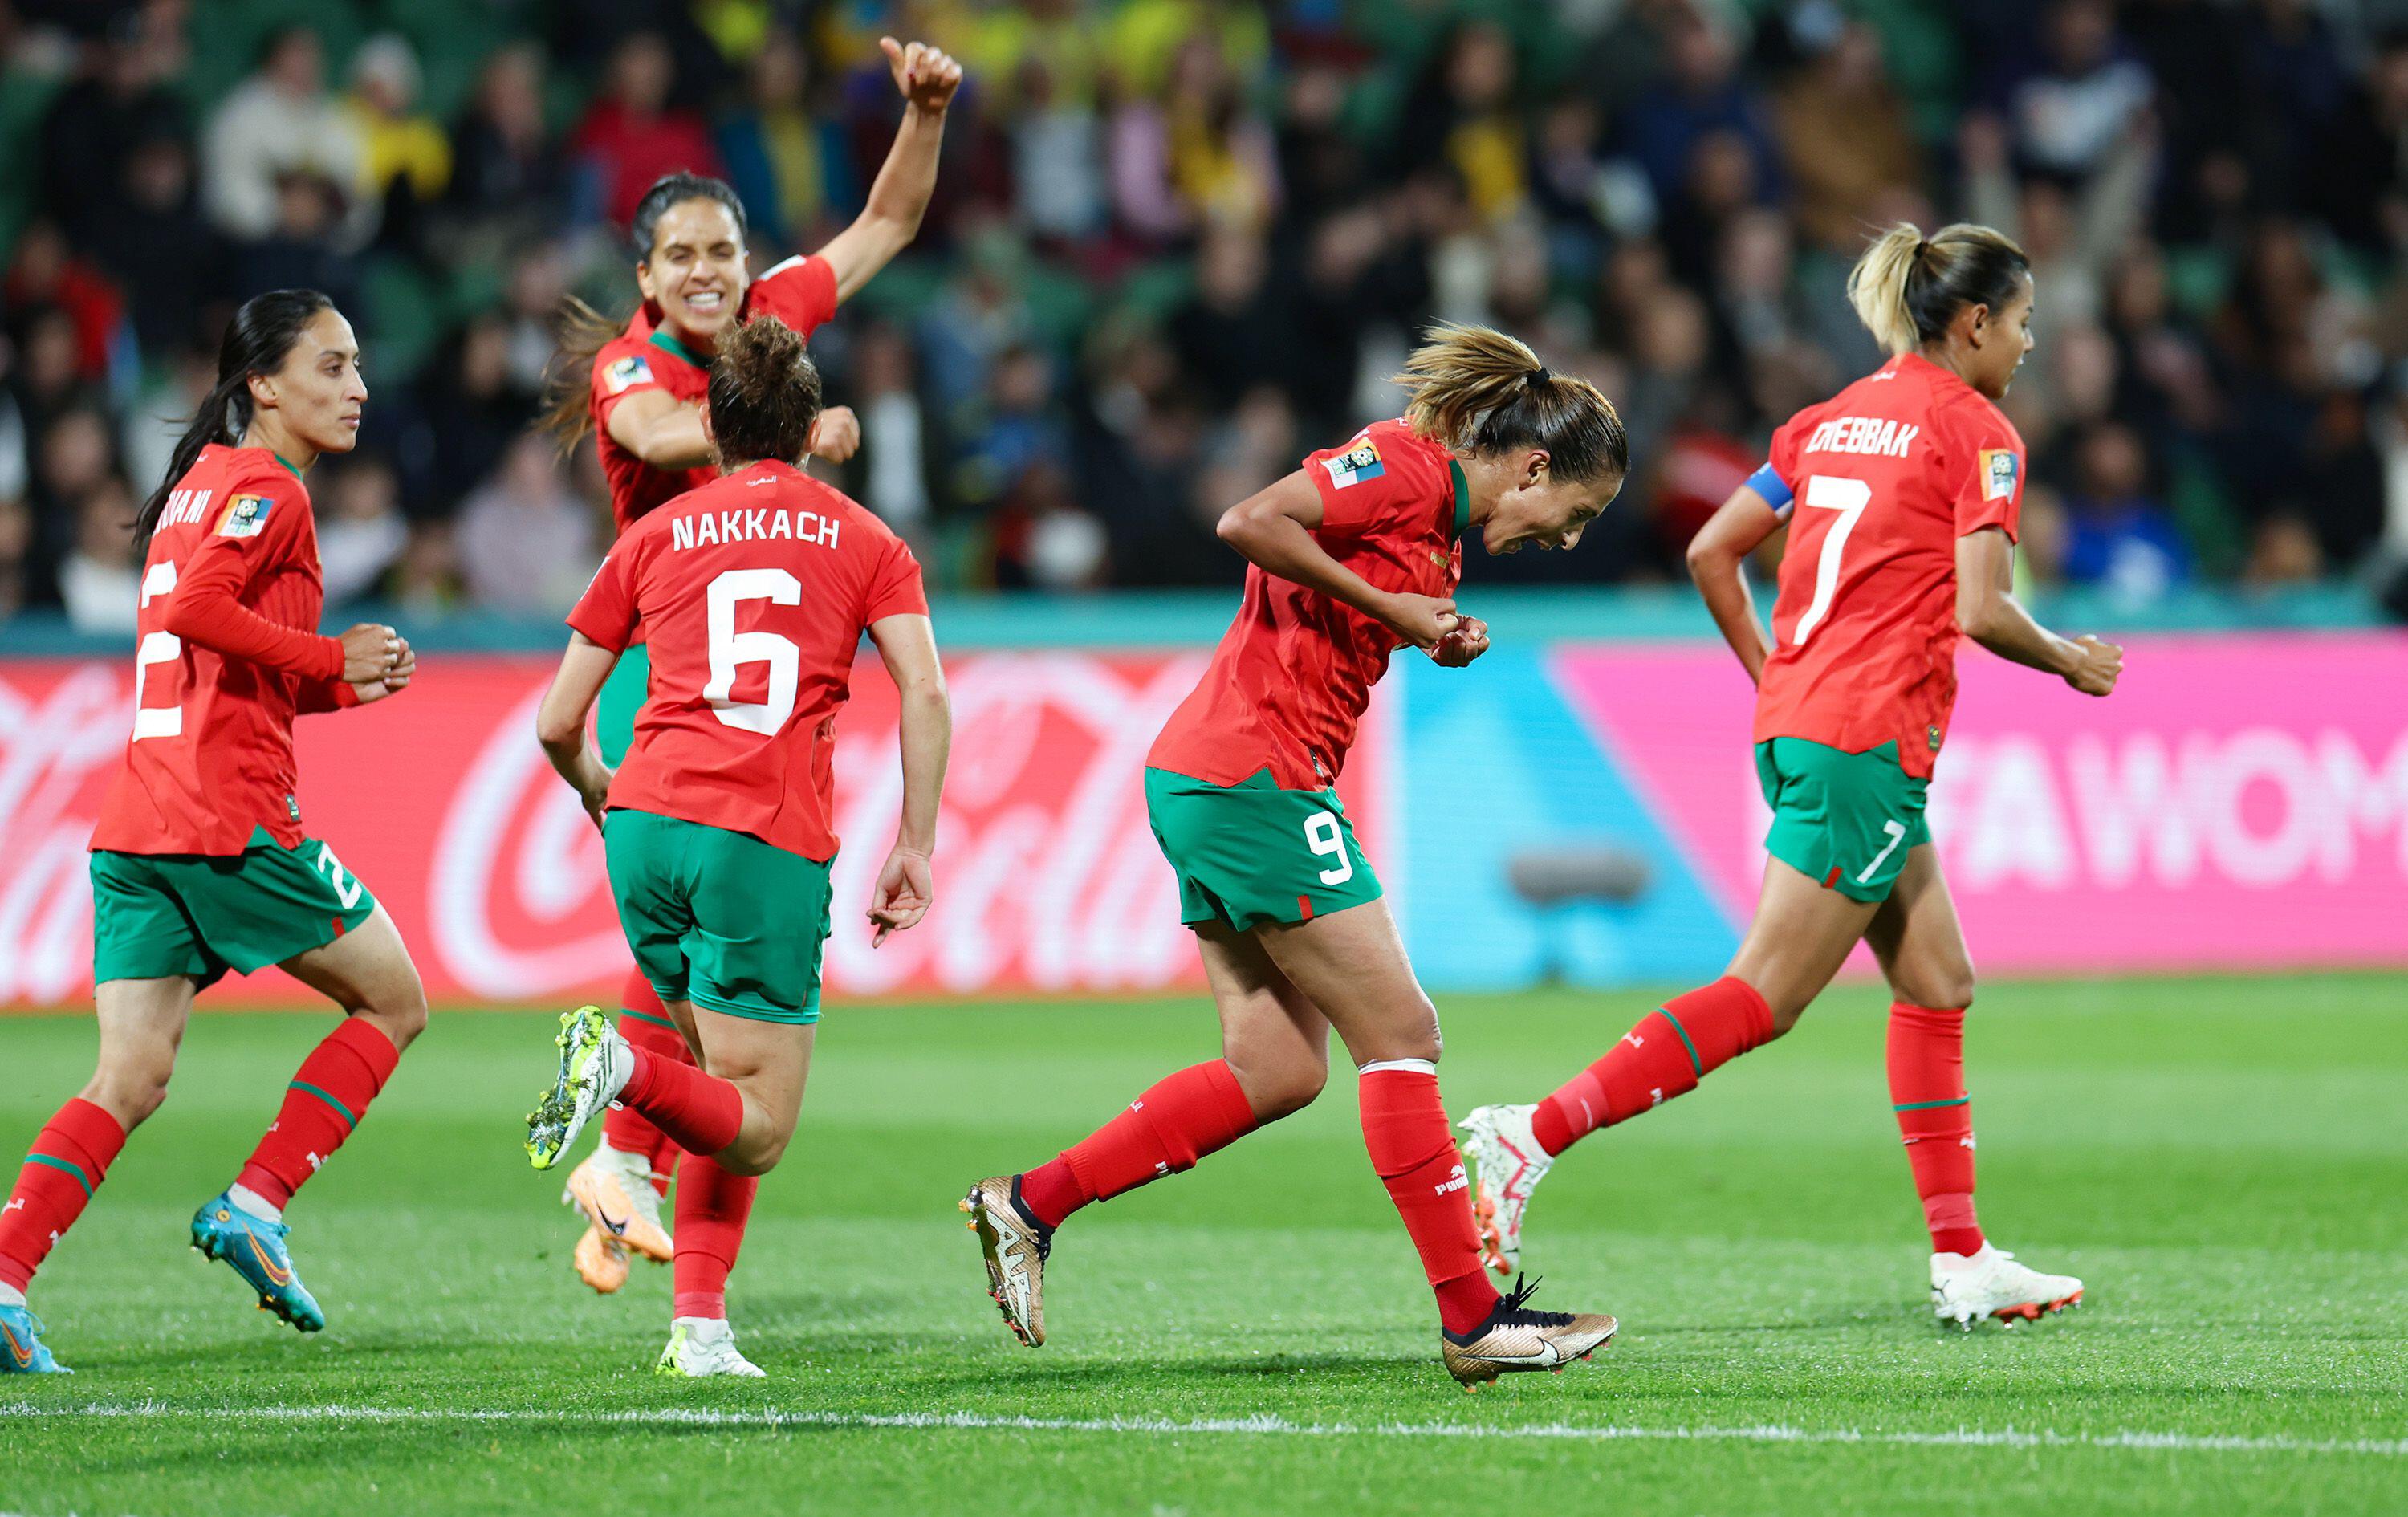 Marokko schrieb Geschichte, indem es dieses Jahr zum ersten Mal das Achtelfinale der Frauen-Weltmeisterschaft erreichte